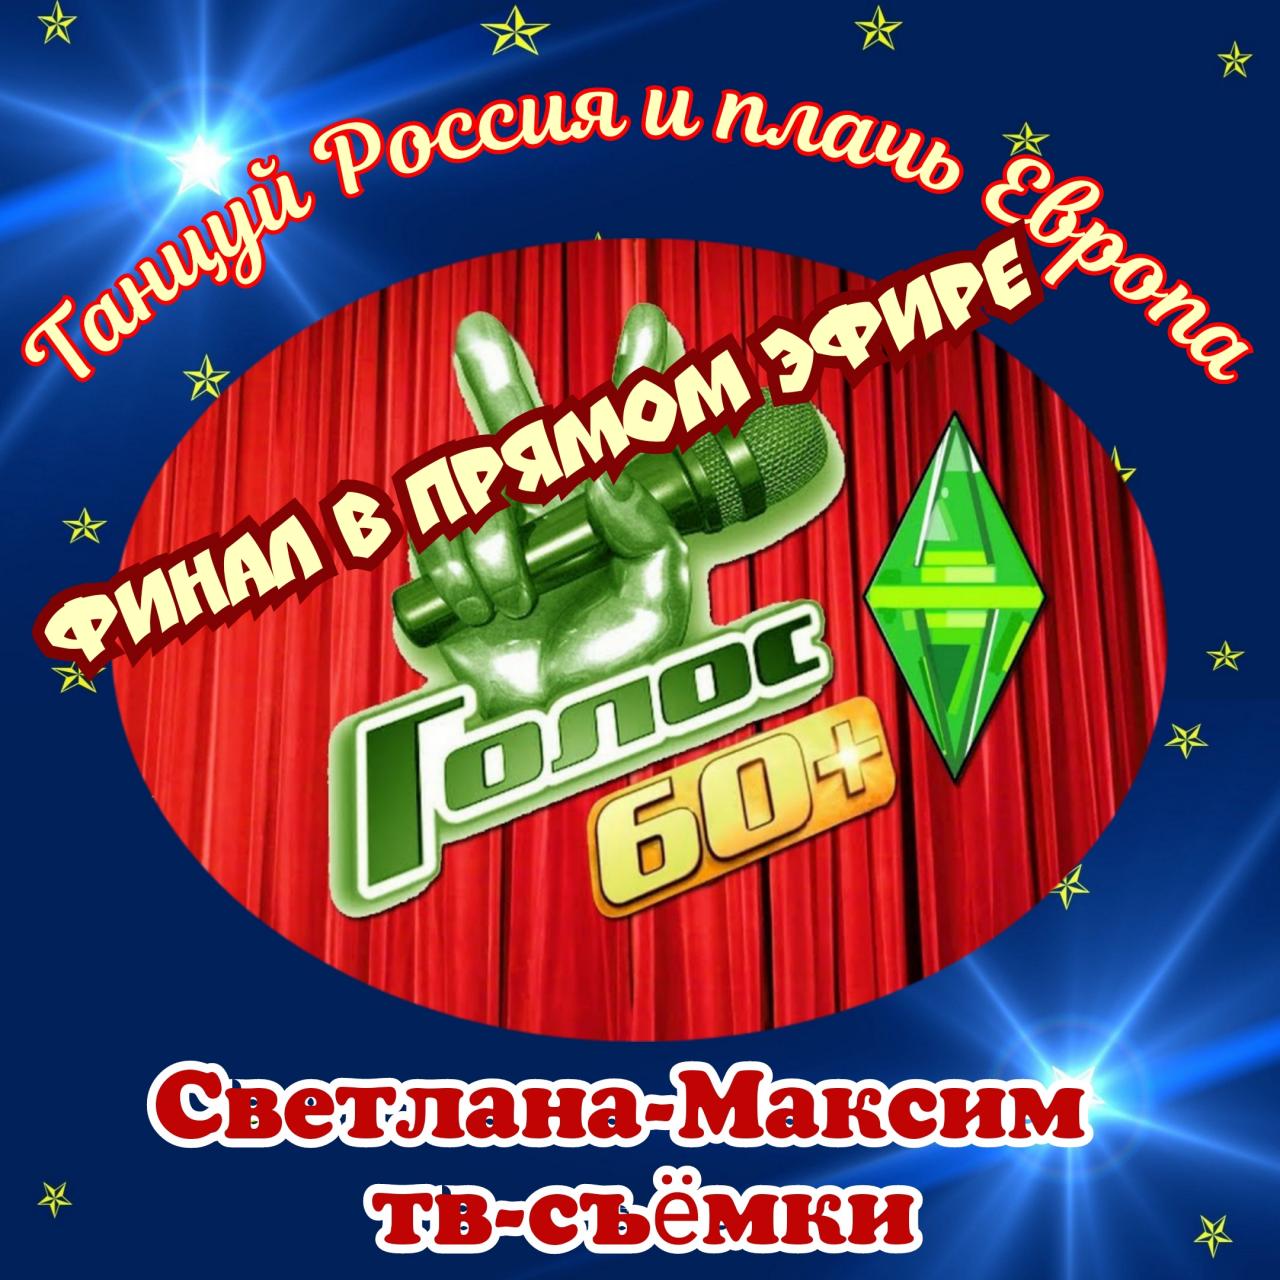 2 октября супер-шоу "ГОЛОС 60+". ФИНАЛ В ПРЯМОМ ЭФИРЕ. 